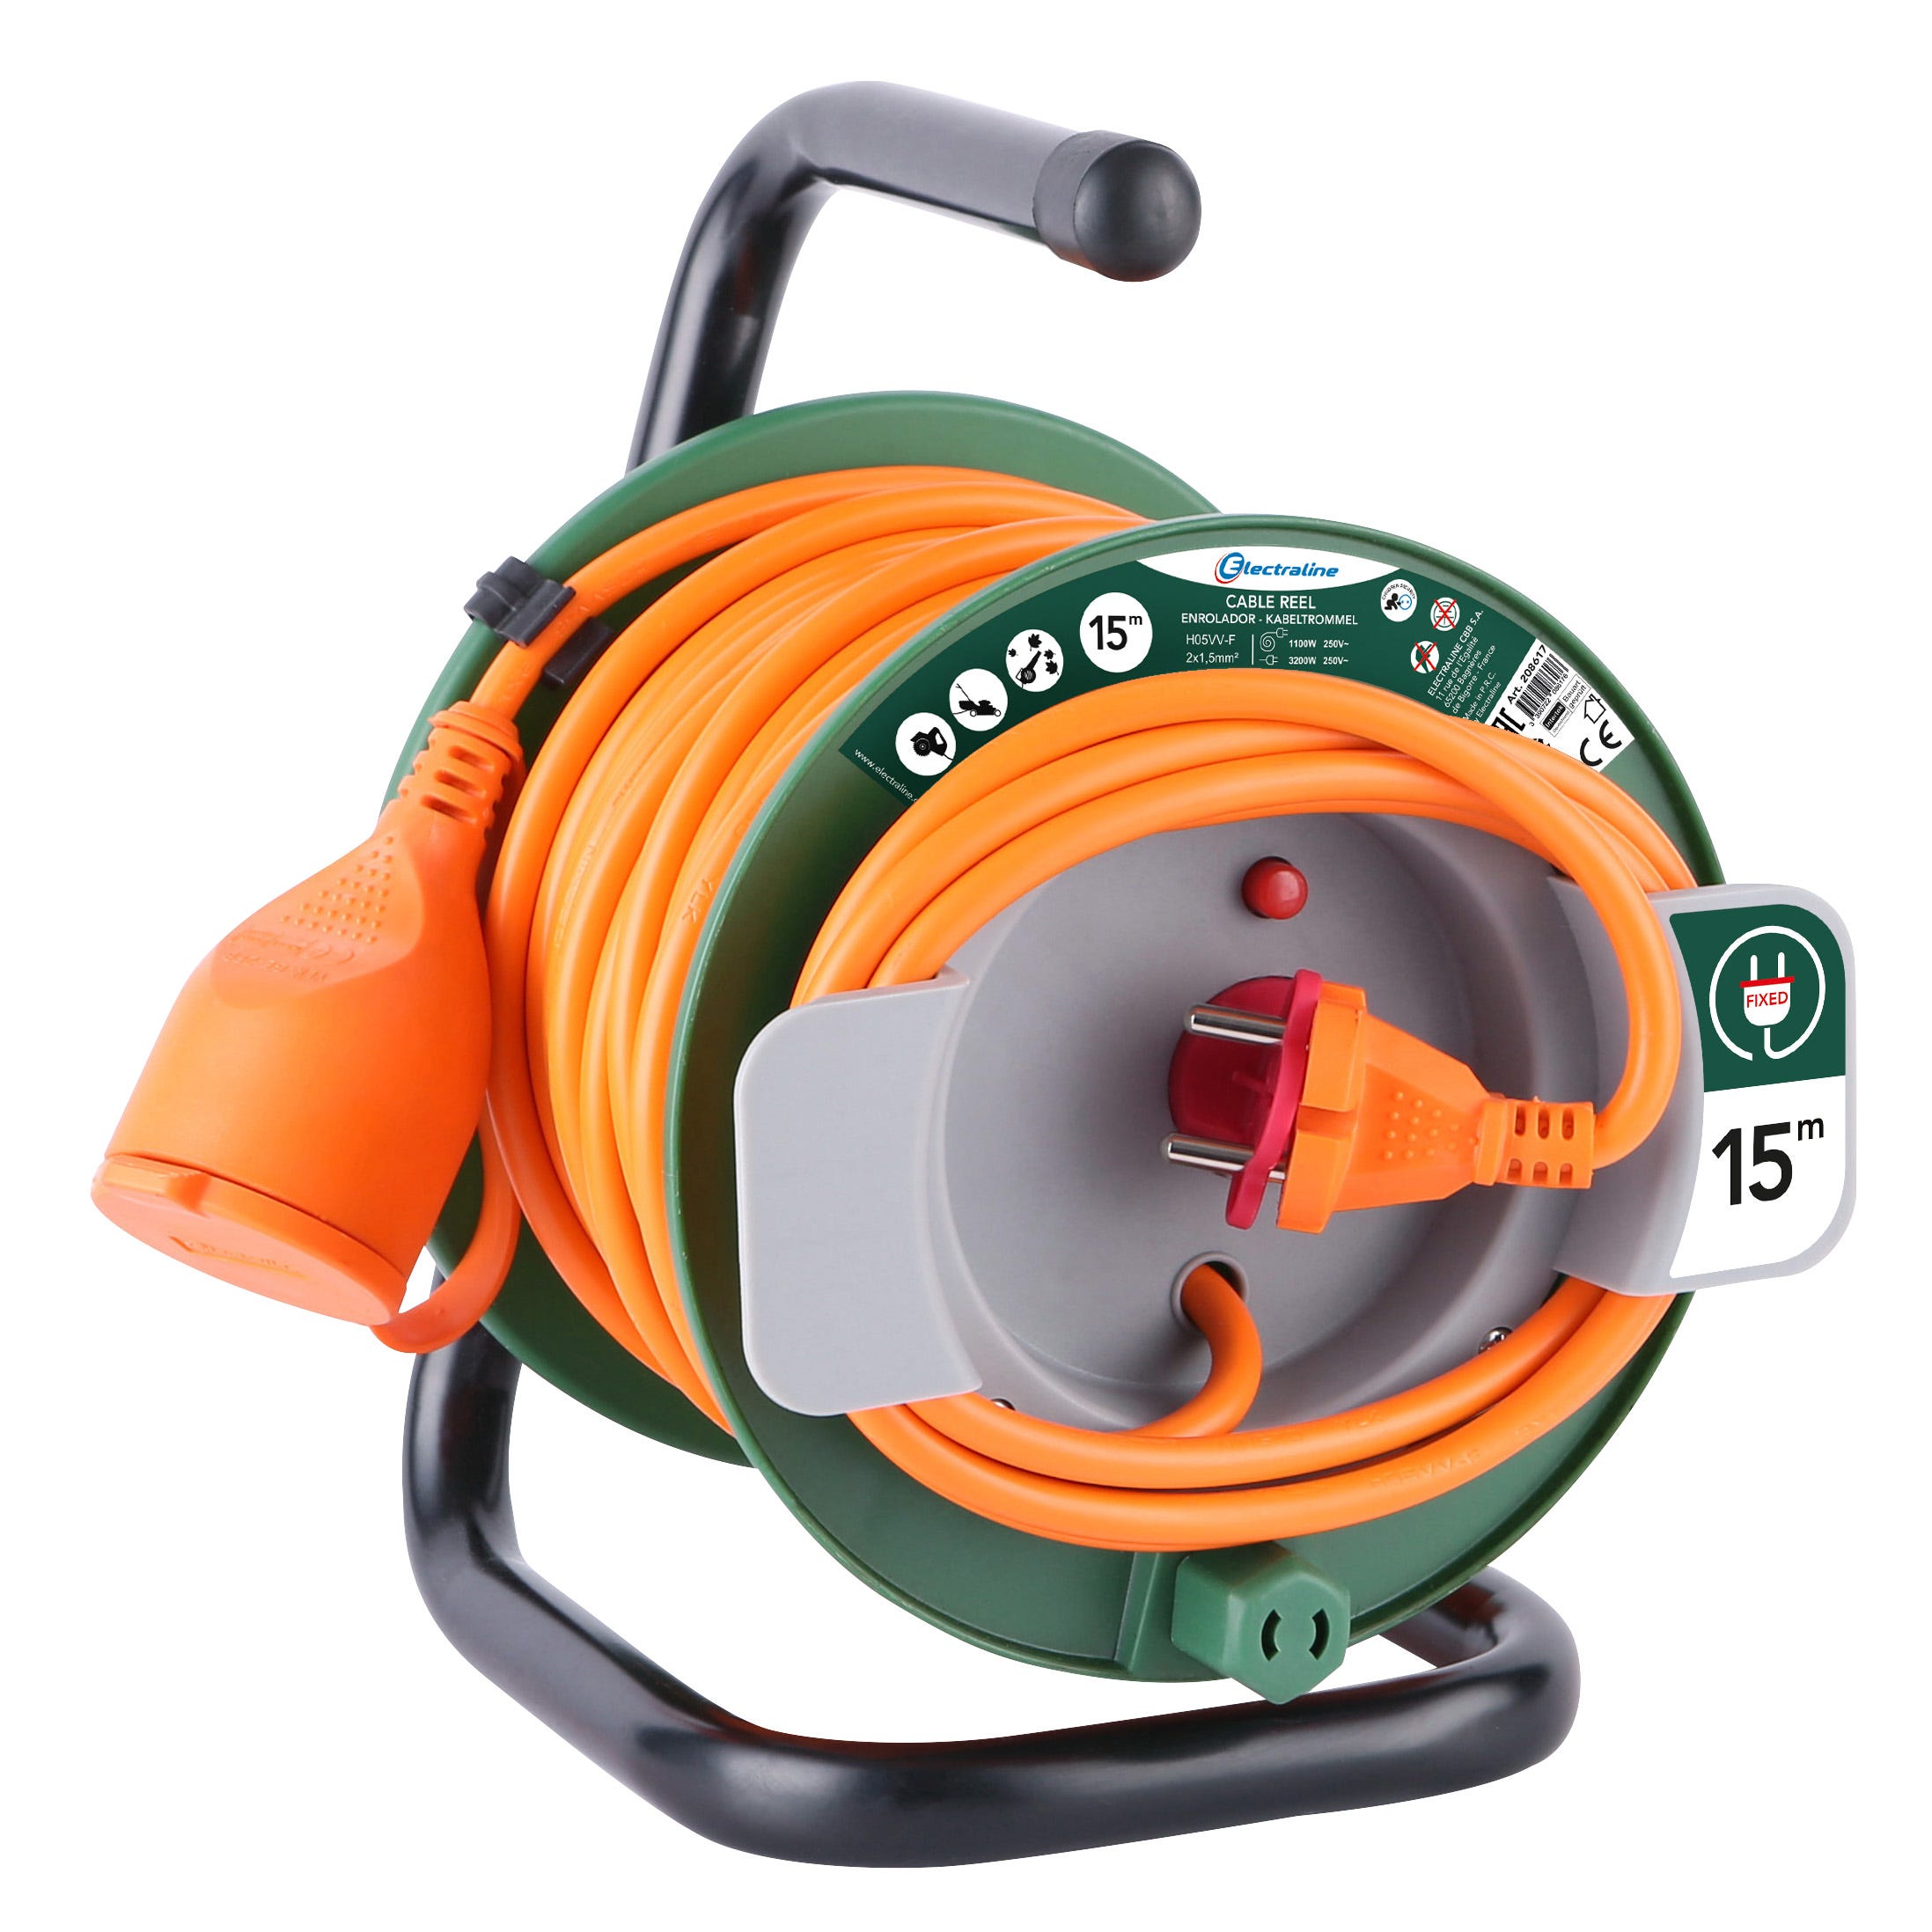 Rallonge électrique 50m H05VV-F 2X1,5 orange